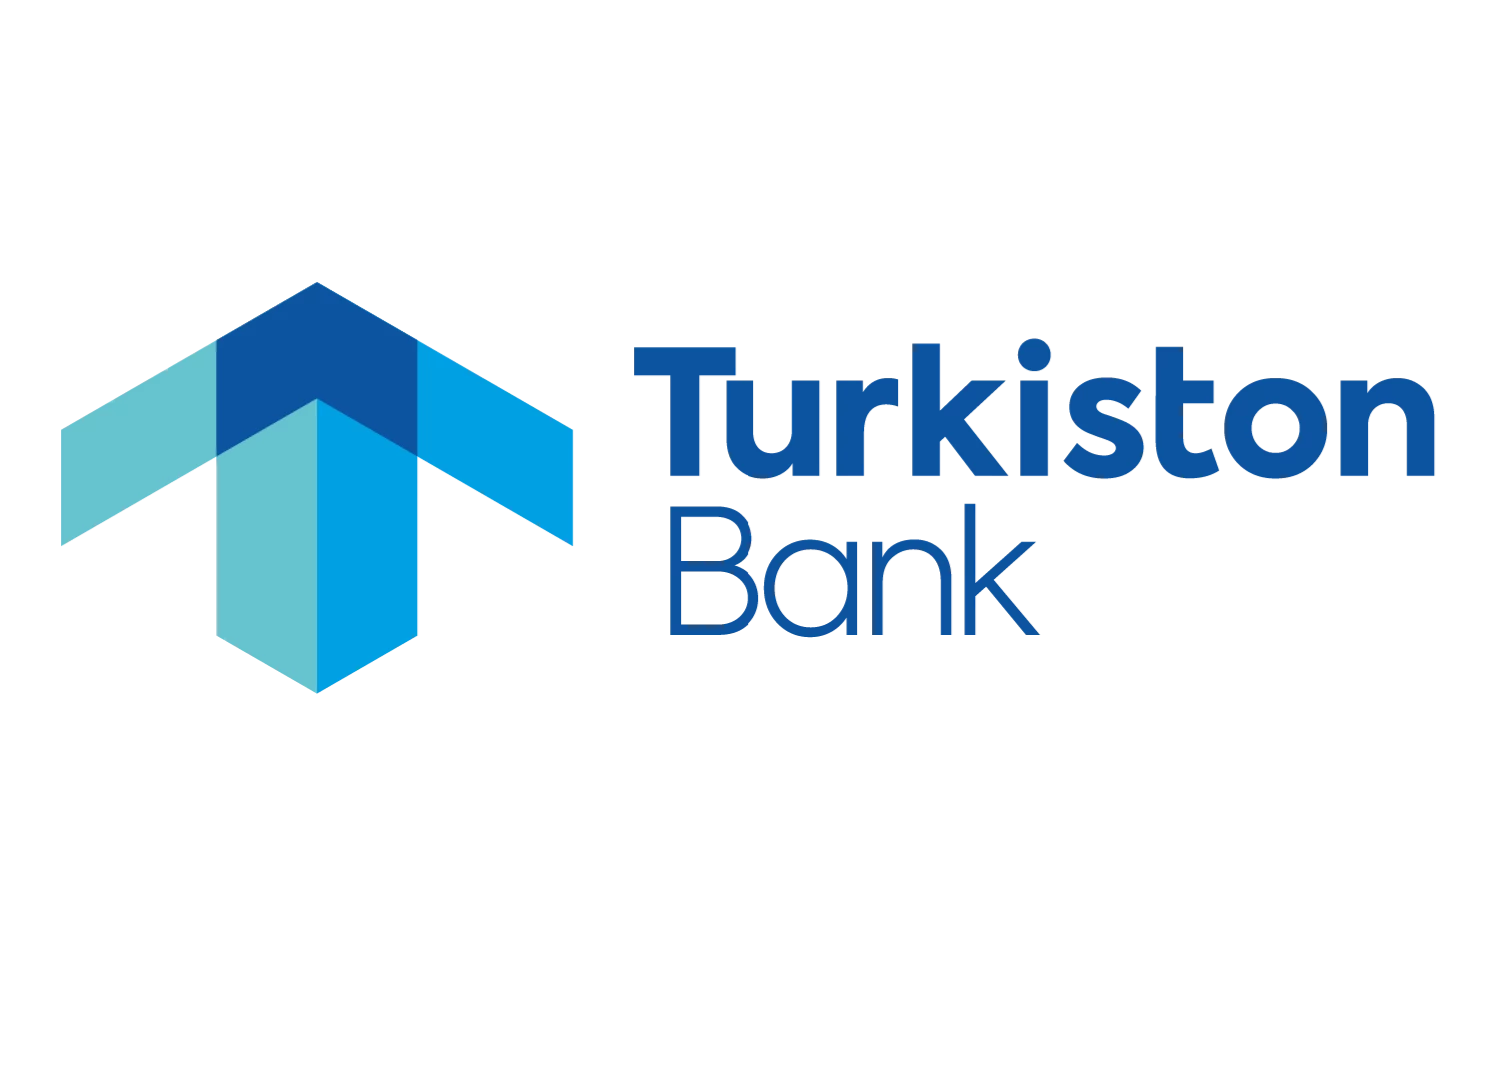 "Turkiston" xususiy aksiyadorlik tijorat banki